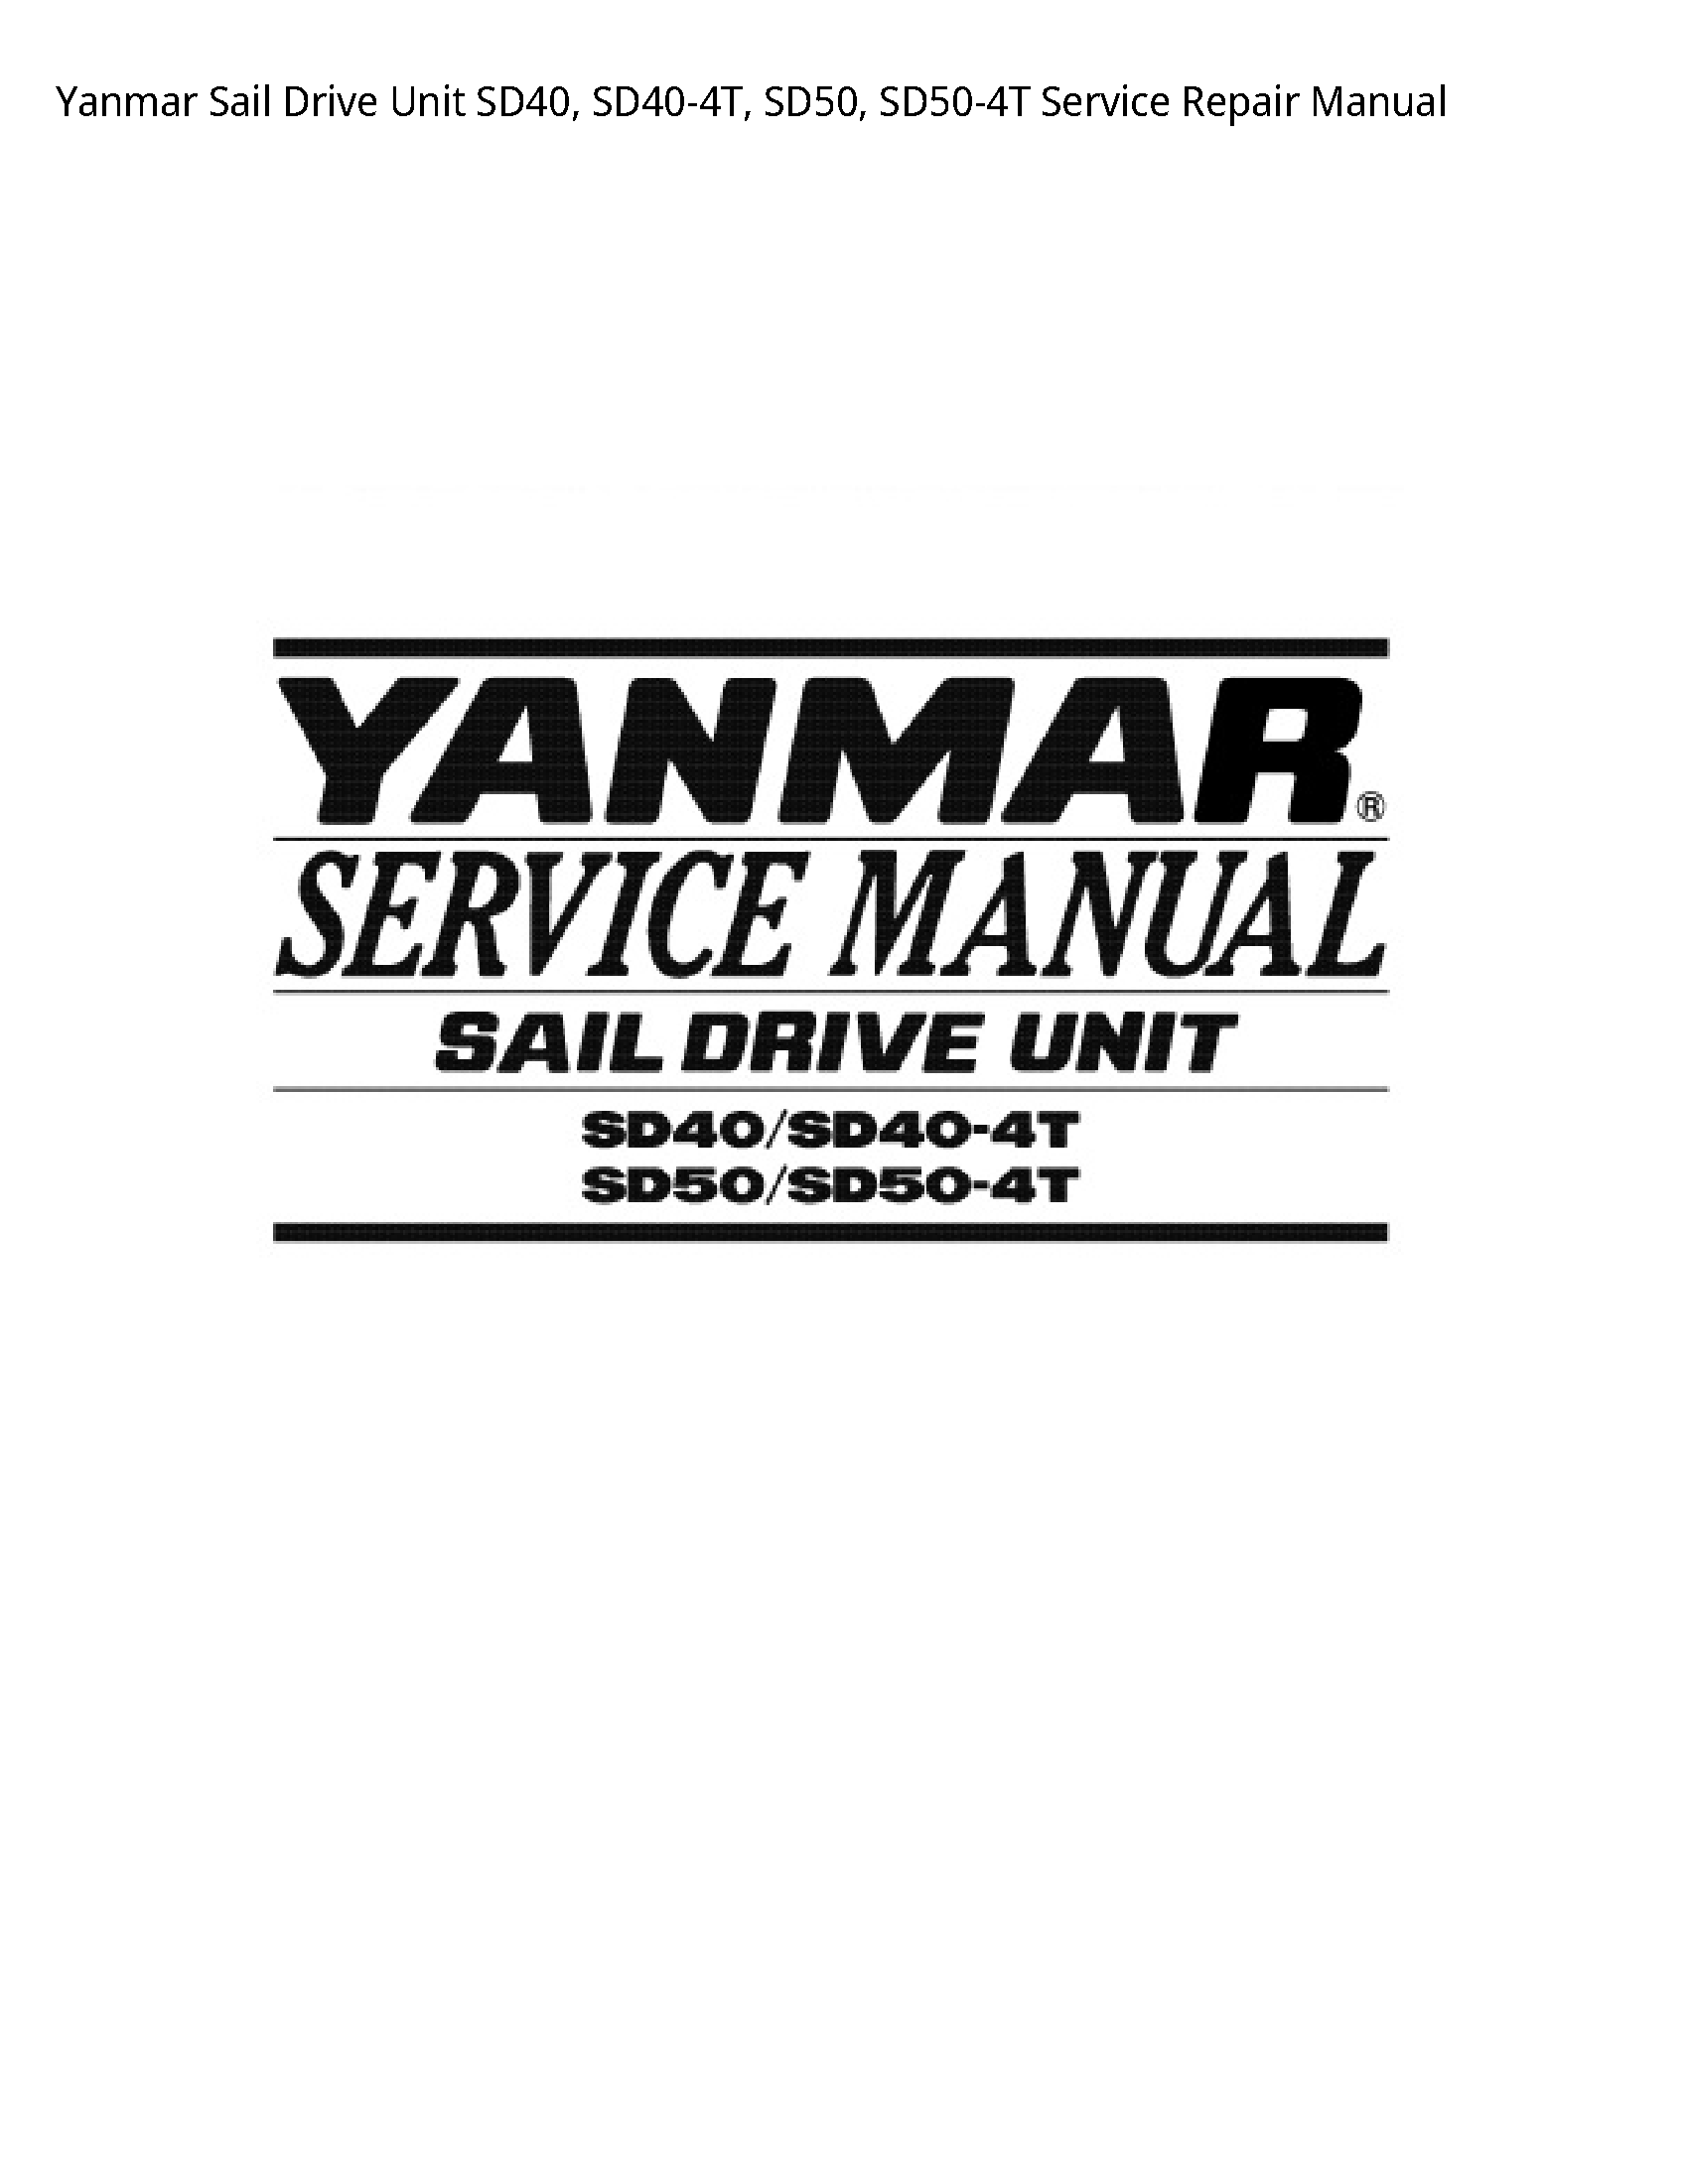 Yanmar SD40 Sail Drive Unit manual